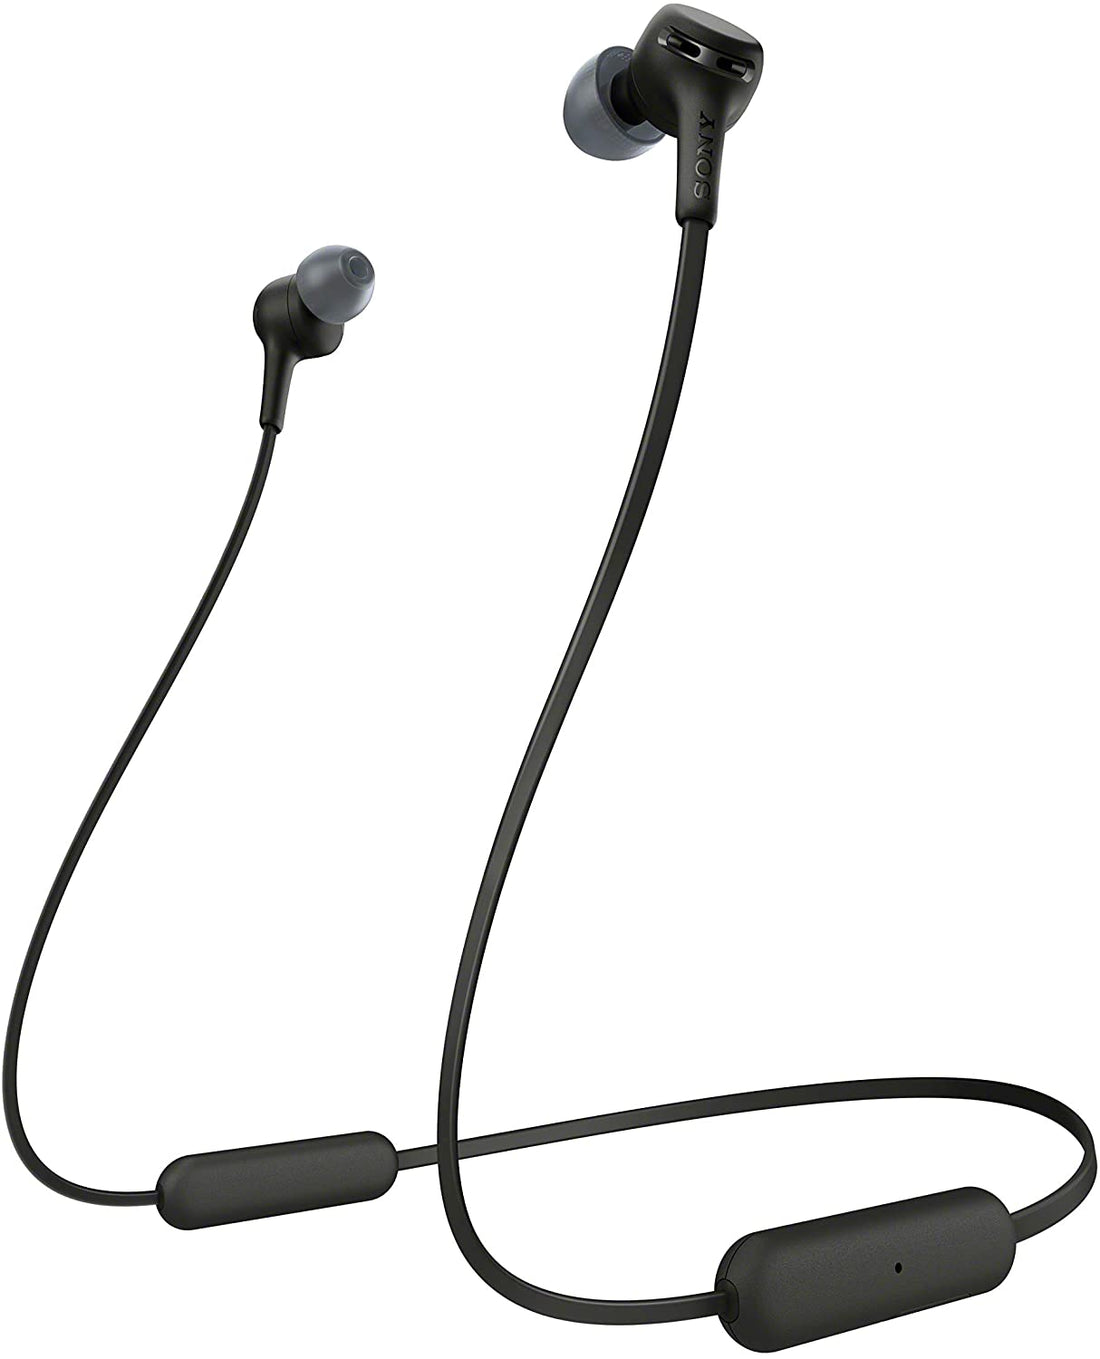 Sony WI-XB400 Wireless In-Ear Headphones - Black (Certified Refurbished)